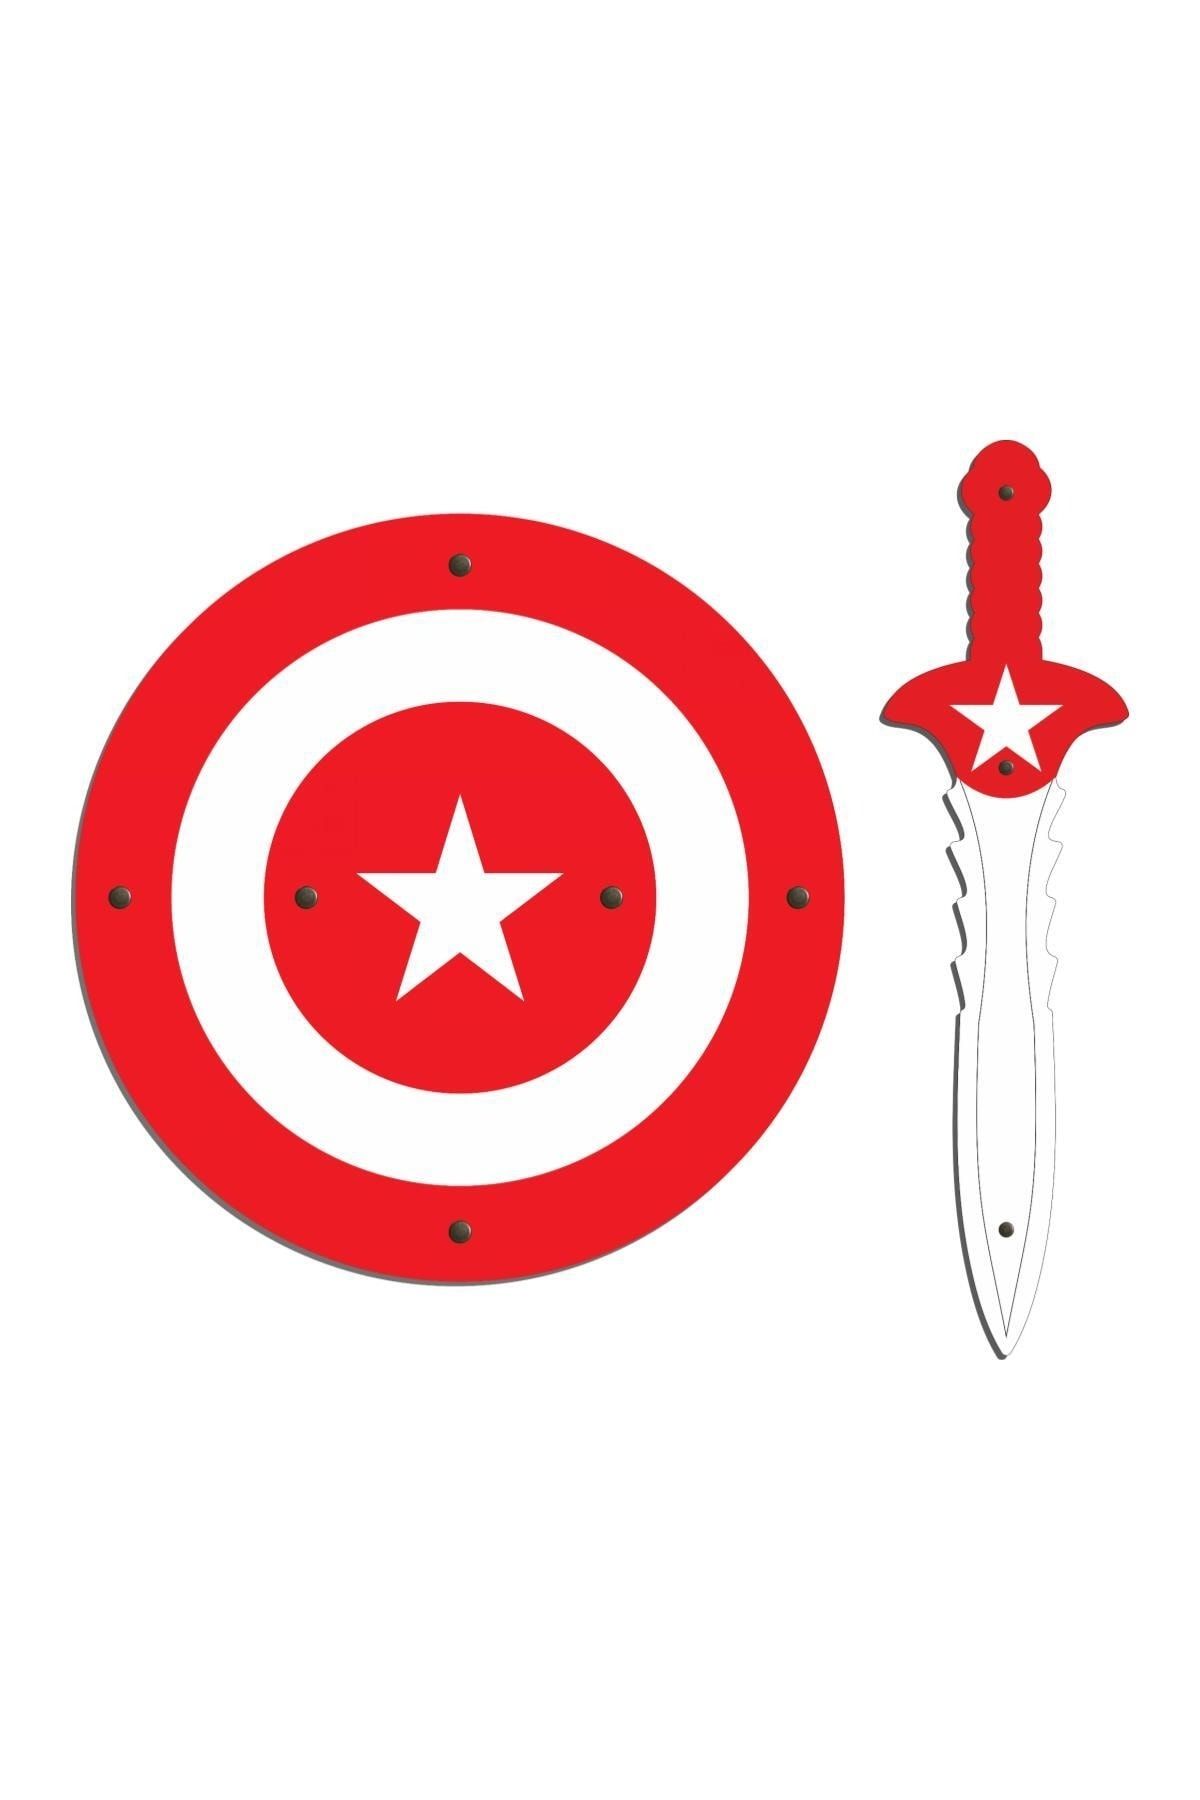 Ahtek Ahşap Oyuncak Seti 2'li, Kaptan Amerika Kalkanı Ve Kılıcı Kırmızı